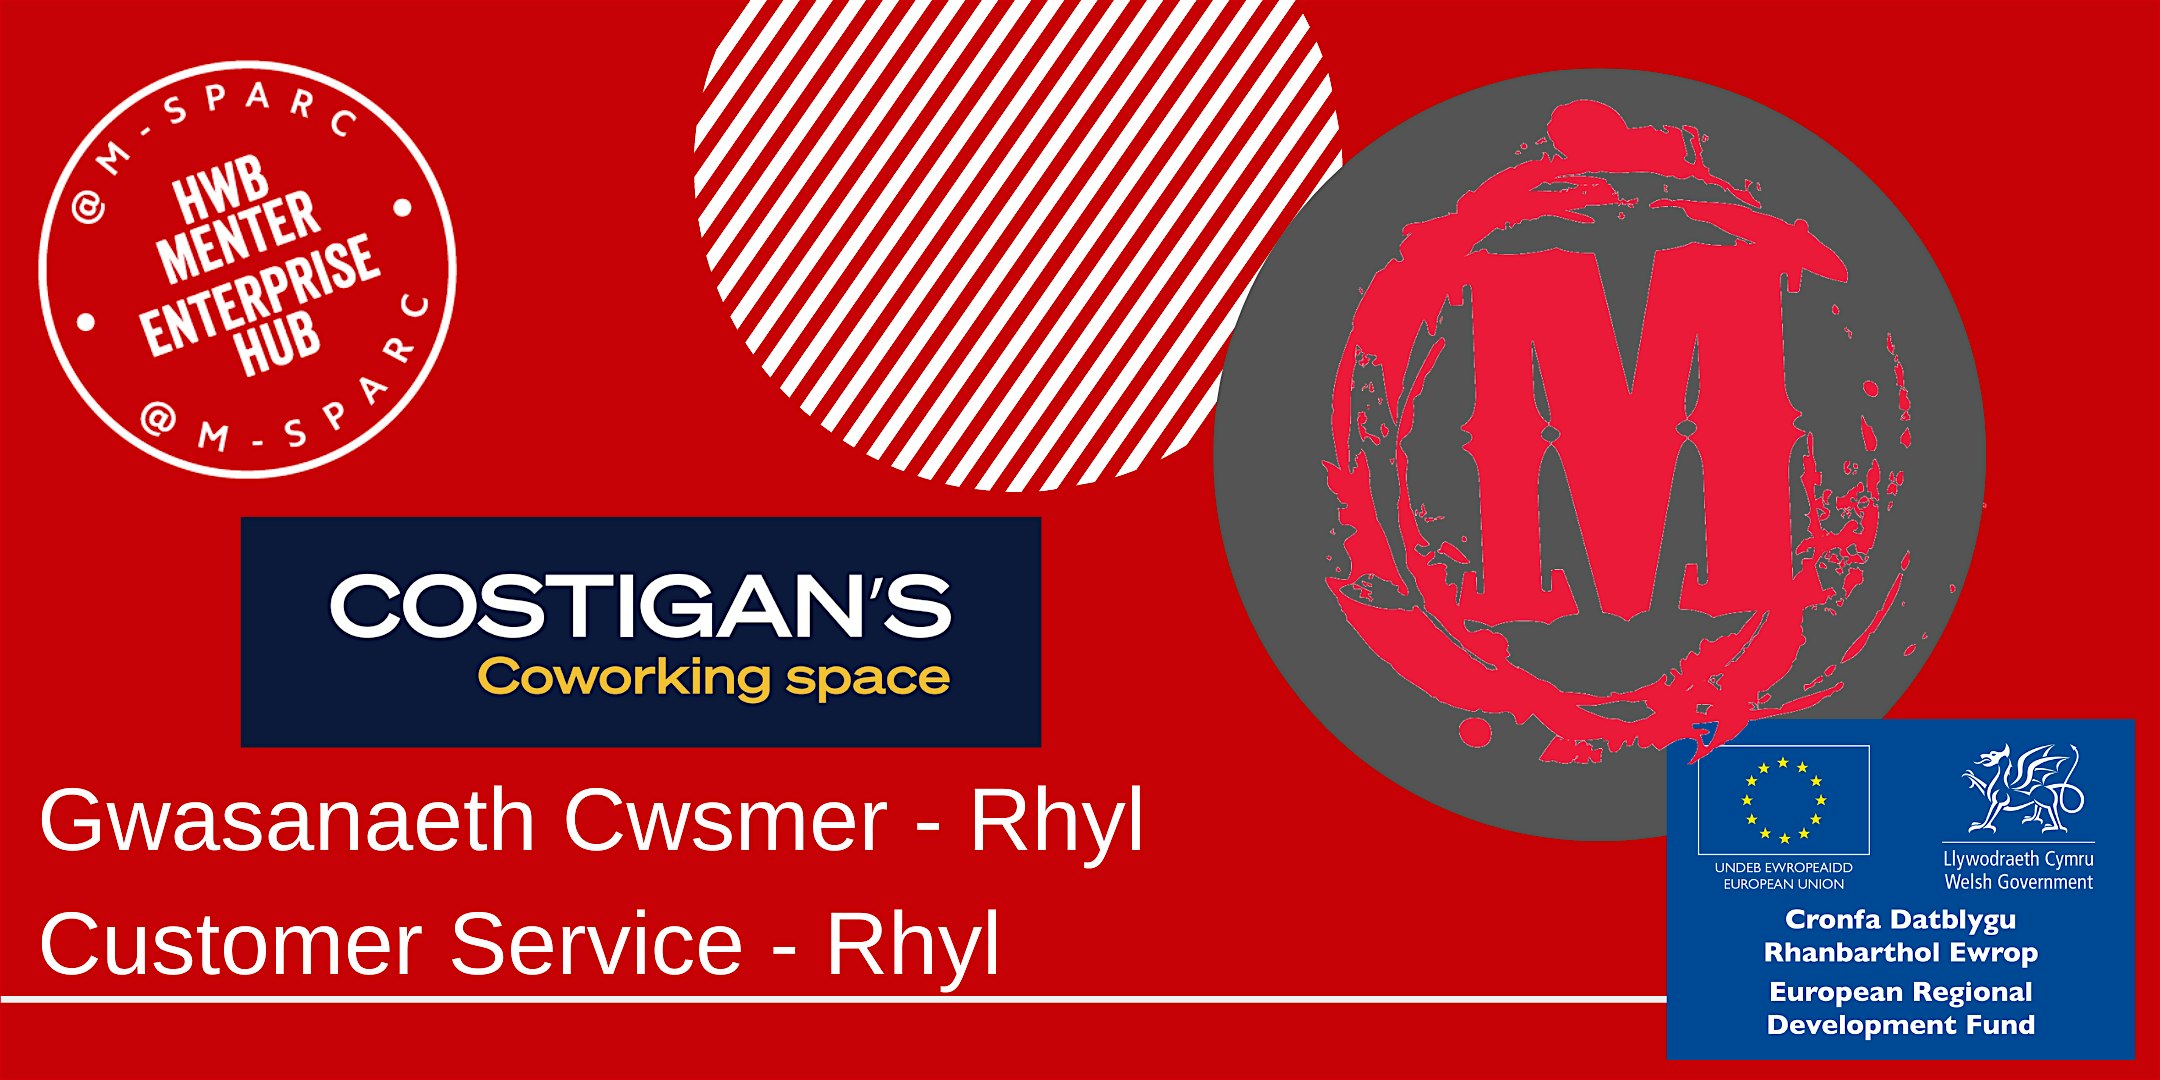 IN PERSON - Gwasanaeth Cwsmer / Customer Service  - Rhyl